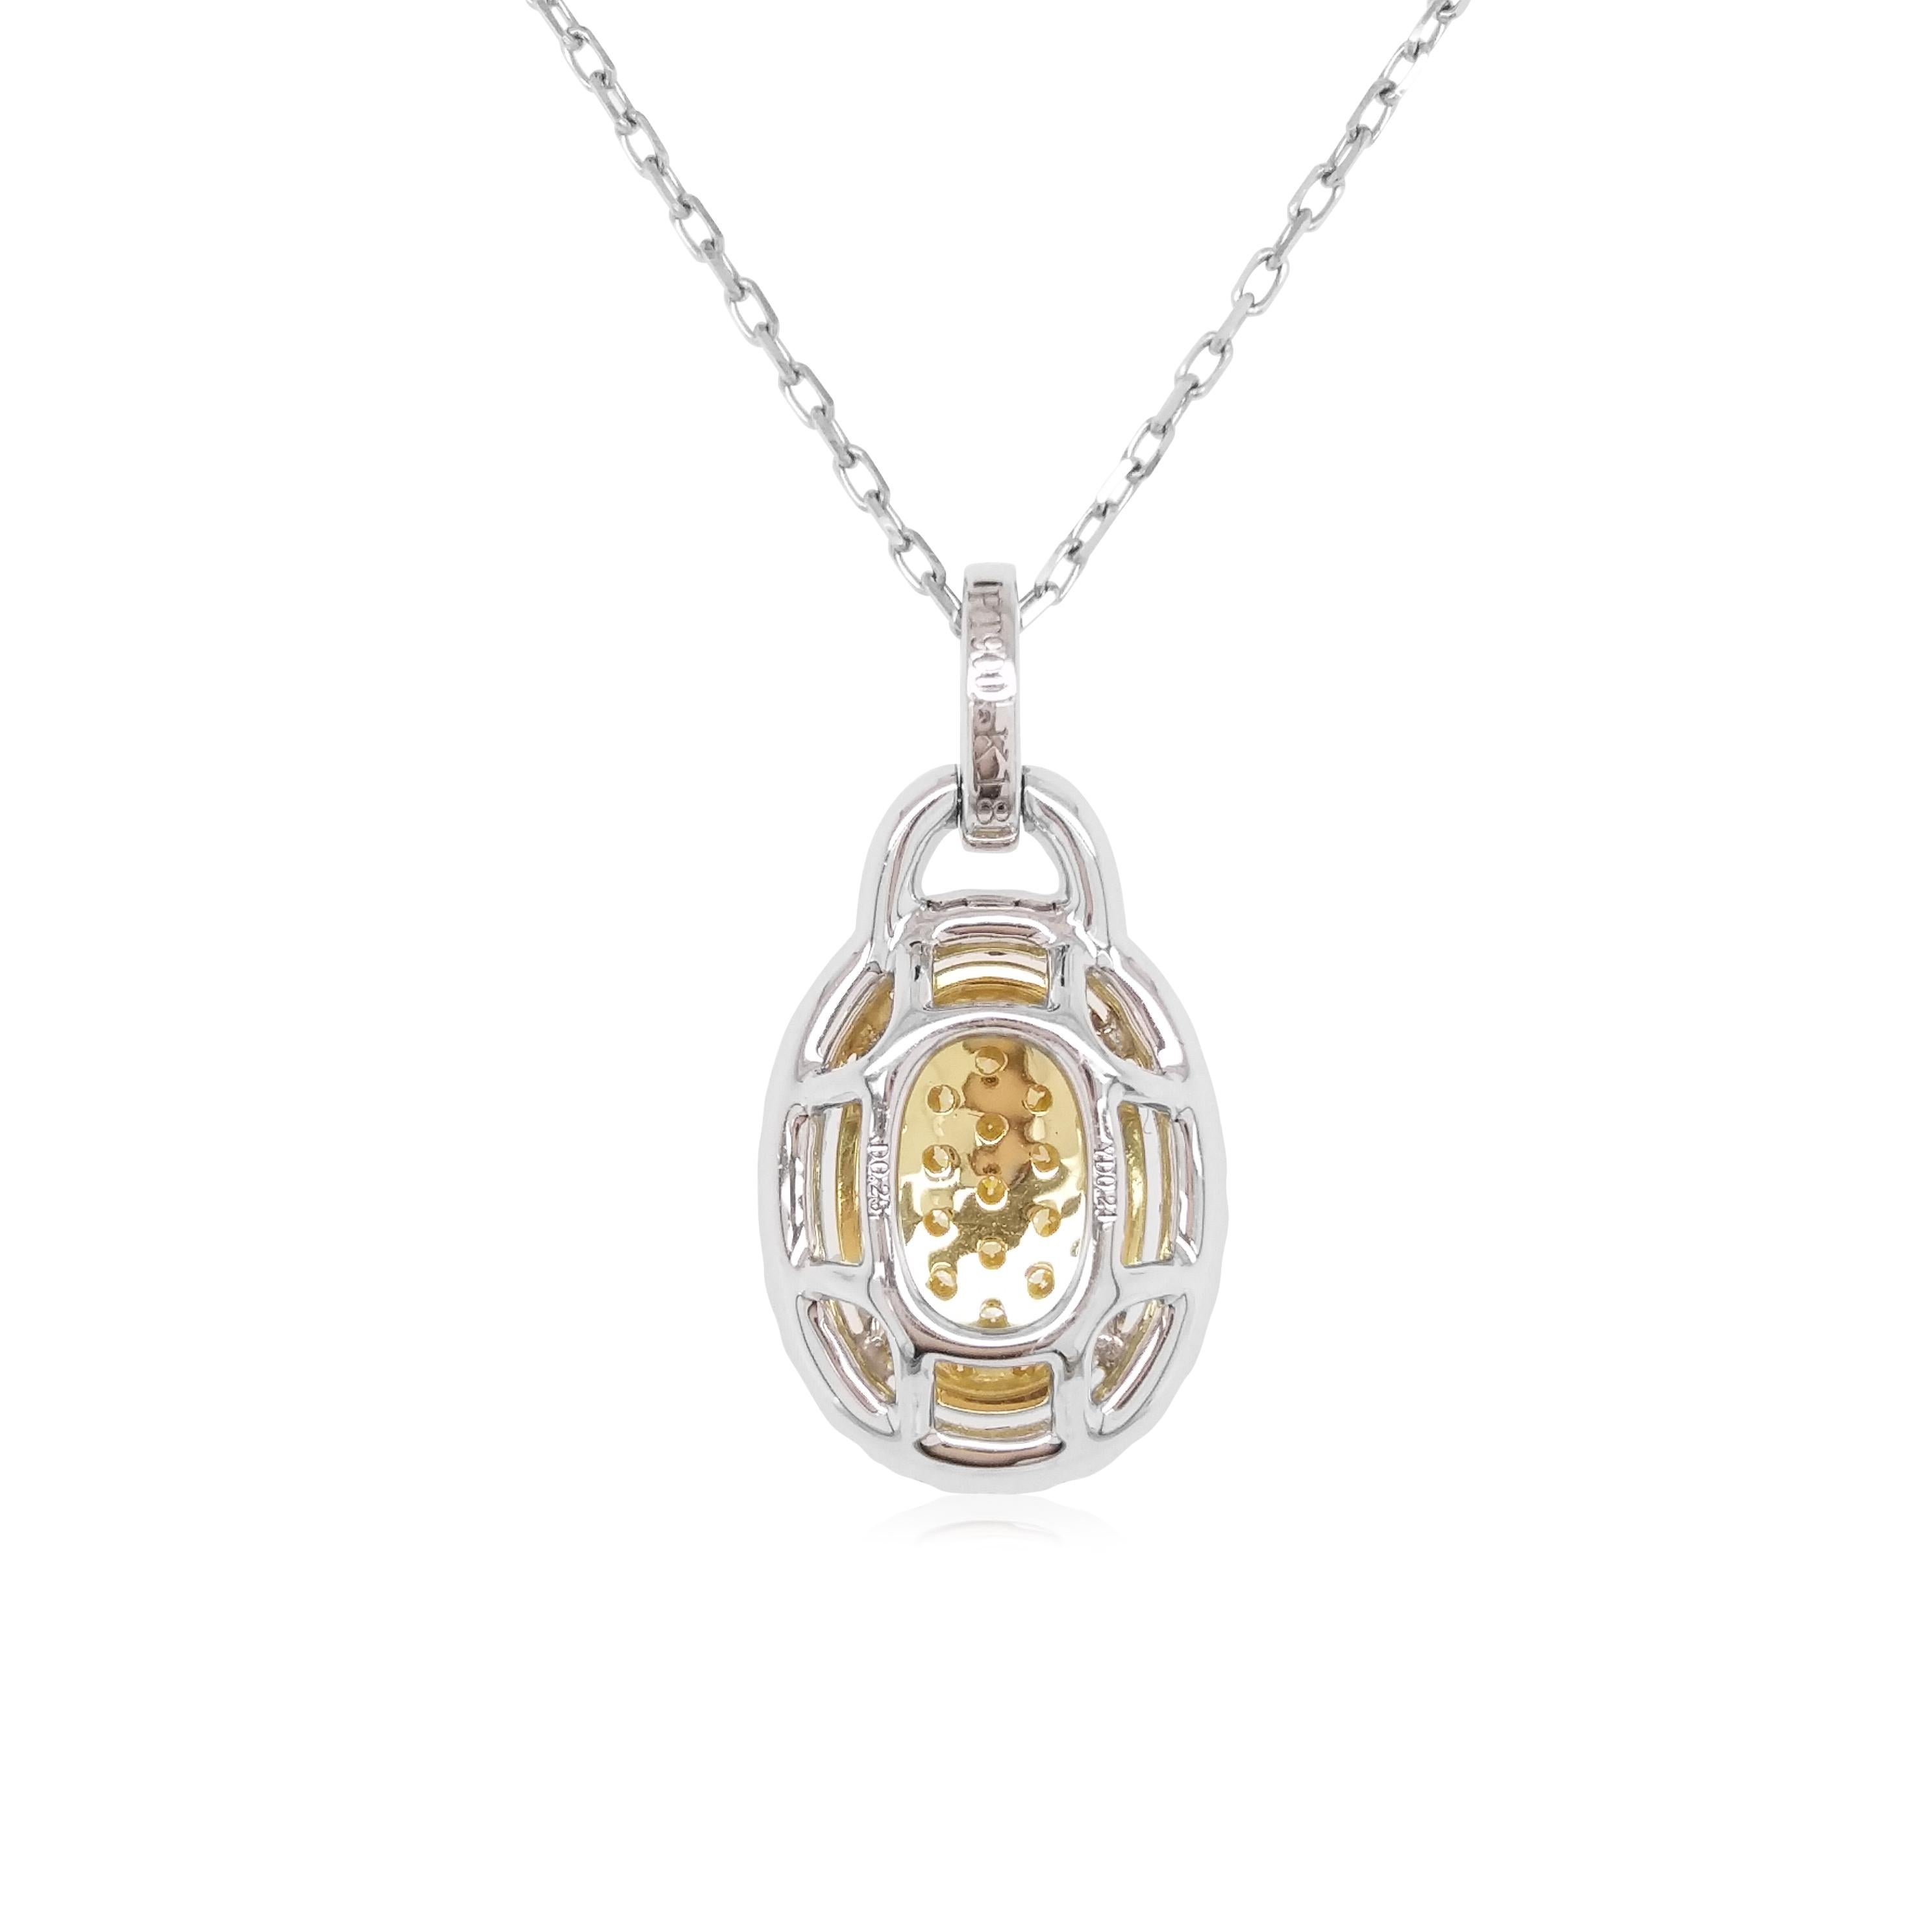 Ce pendentif unique présente de saisissants diamants jaunes naturels au premier plan, entourés d'un halo de diamants blancs étincelants. Pièce parfaite pour passer du jour au soir, ce pendentif rehaussera n'importe quelle tenue, surtout lorsqu'il